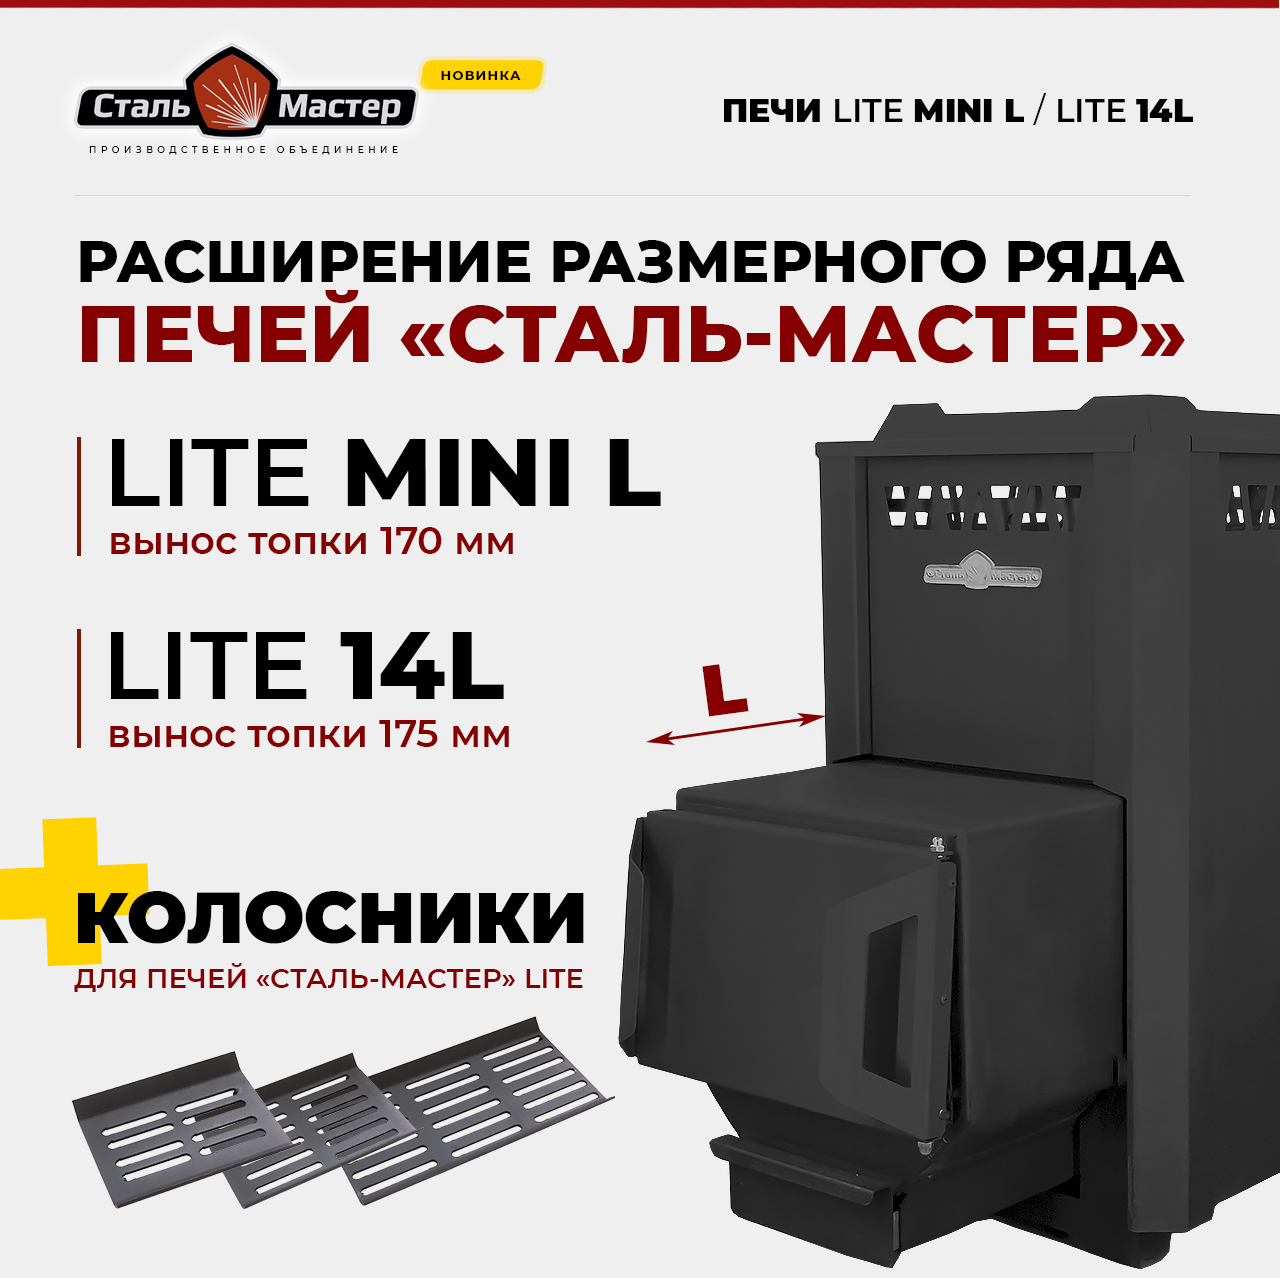 банные печи серии Lite с увеличенным выносом топки Lite Mini L и Lite 14L